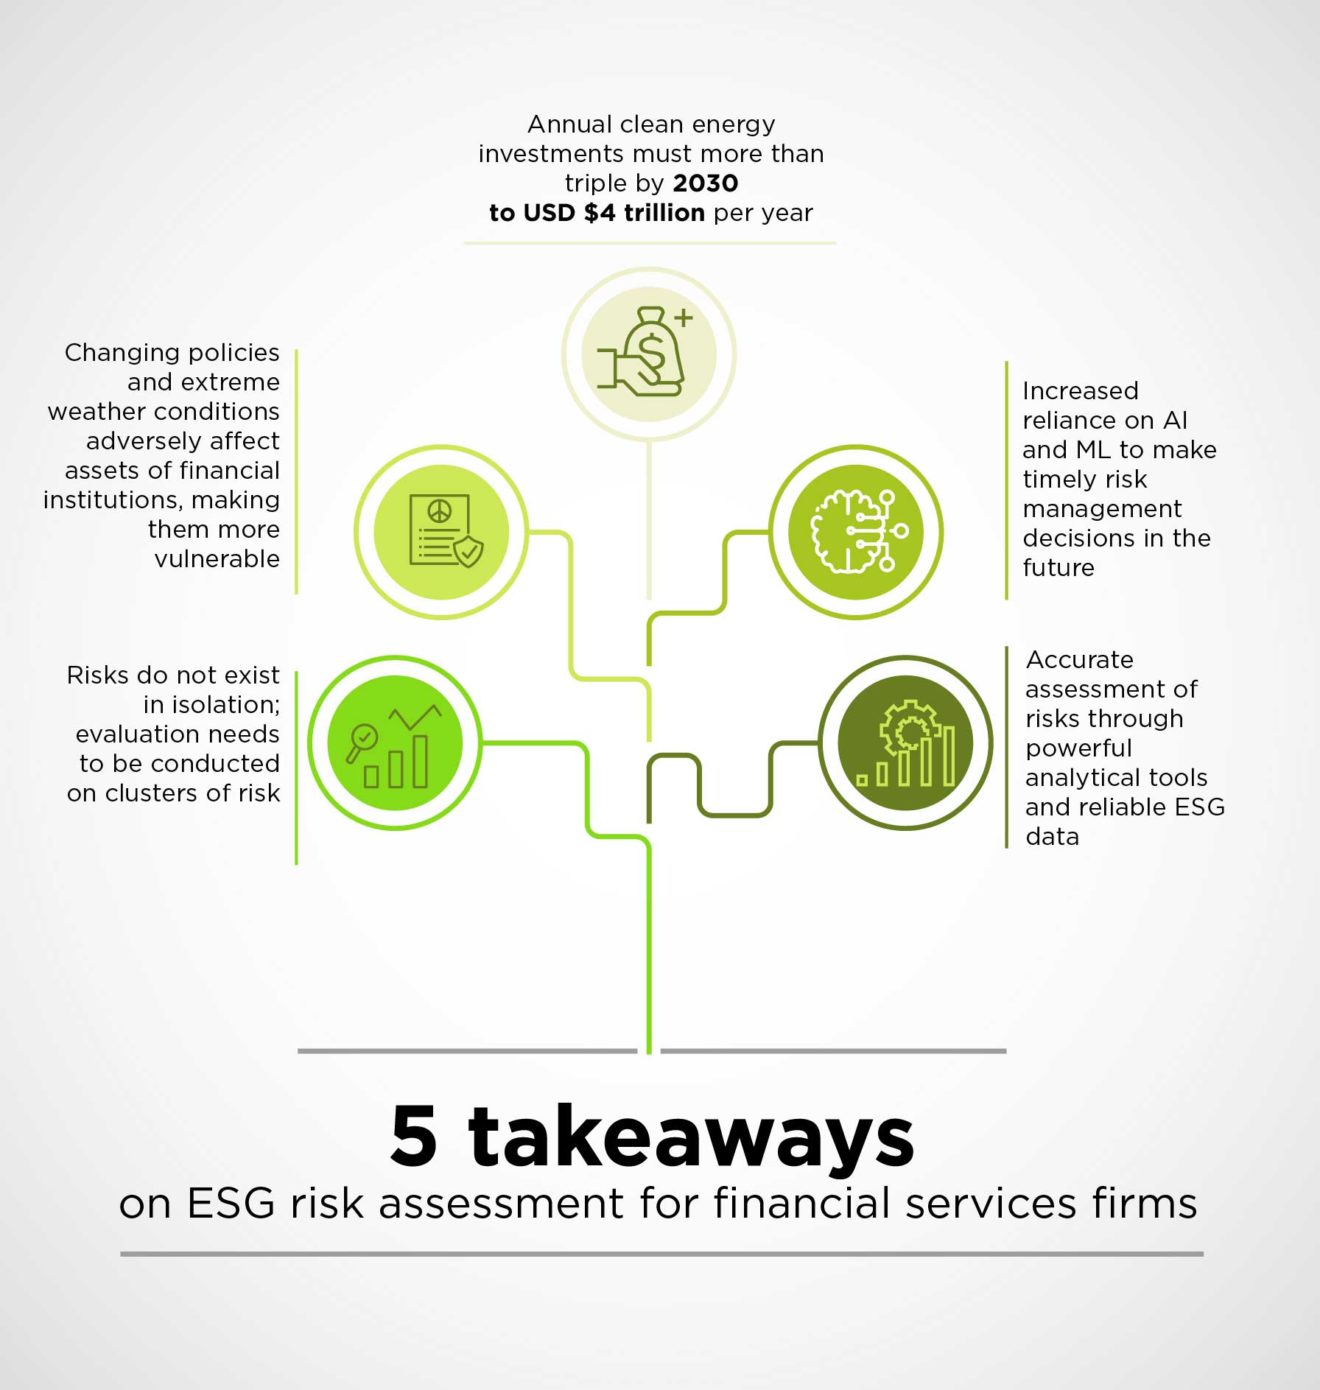 ESG-Risikobewertung stellt Finanzunternehmen vor enorme Herausforderungen; die IT wird helfen